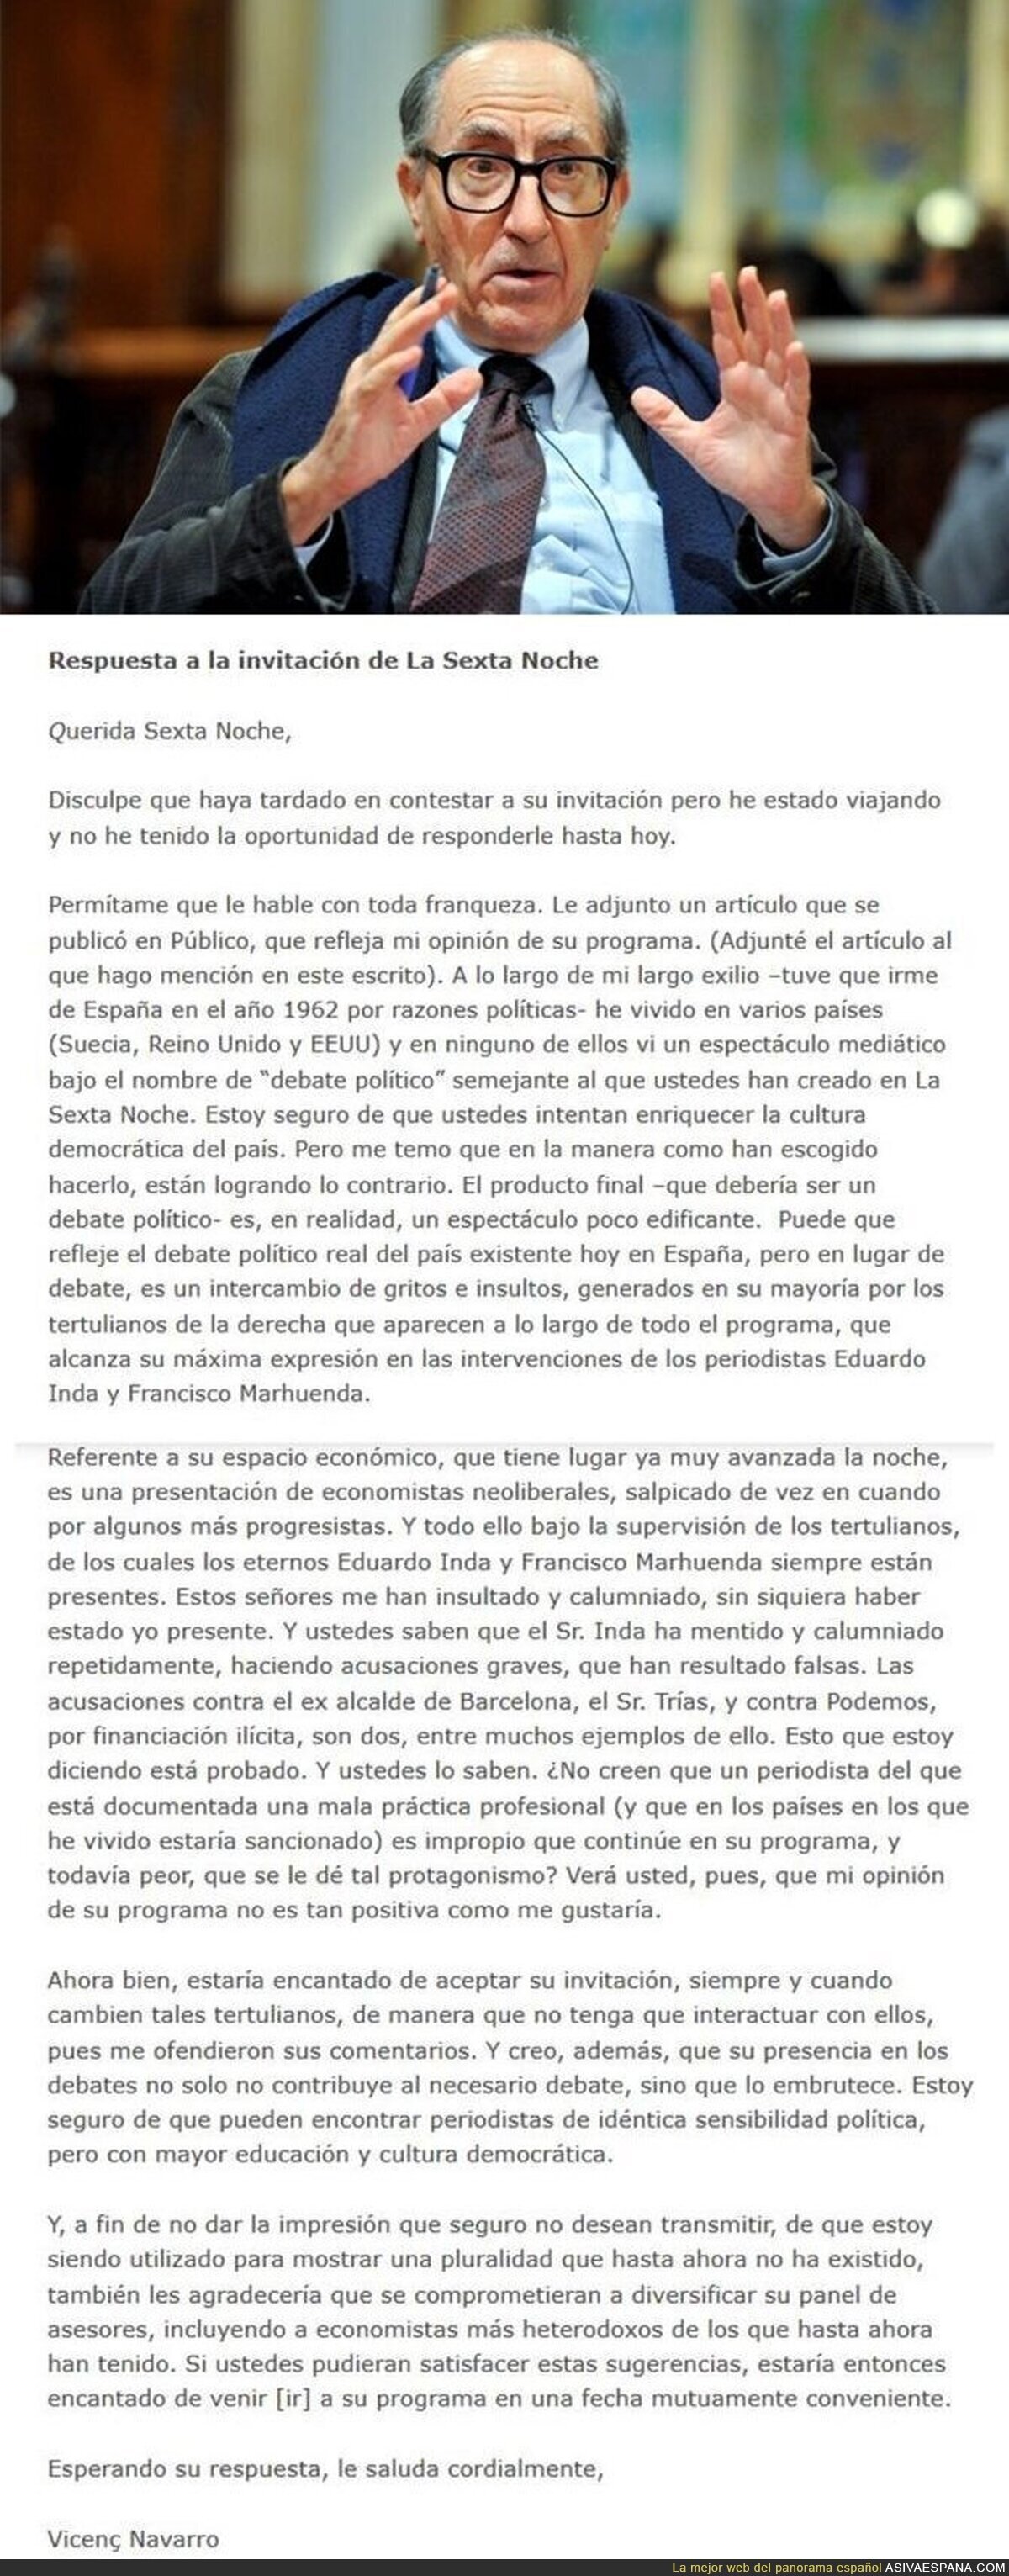 Respuesta del catedrático Vicenç Navarro a la invitación de La Sexta Noche